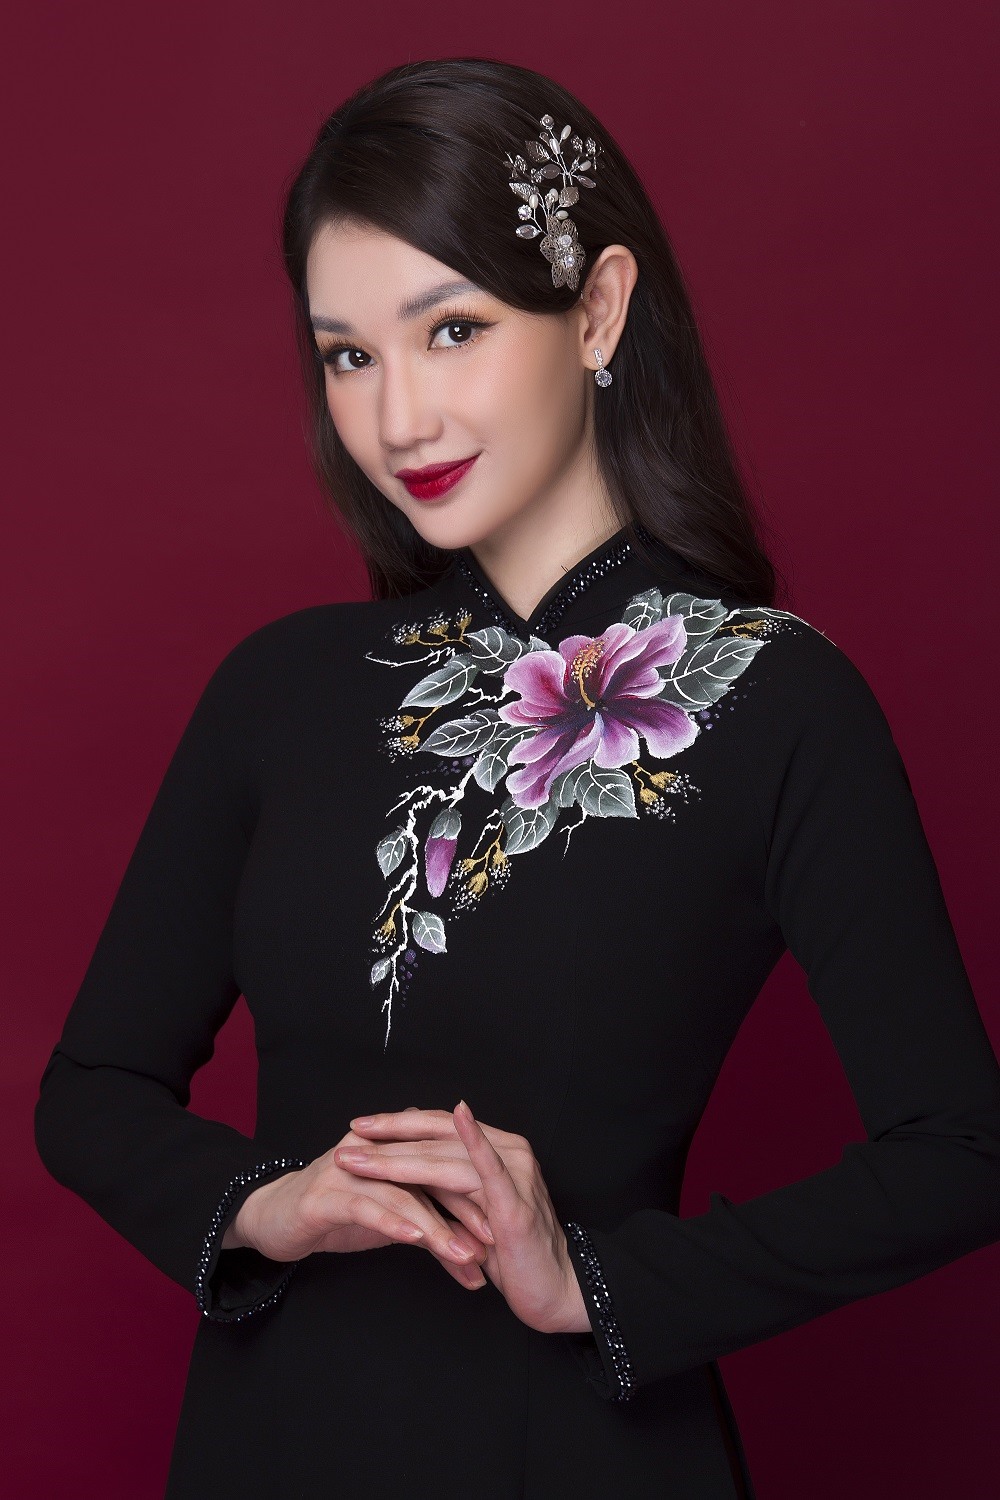 Với tình yêu dành cho nghệ thuật, NTK Minh Châu đã kết hợp khéo léo ở phần vai, tay áo giúp người đẹp Quỳnh Chi vừa giữ được nét truyền thống song vẫn tôn lên sự hiện đại, sắc sảo của một người con gái thành đạt trong cuộc sống.